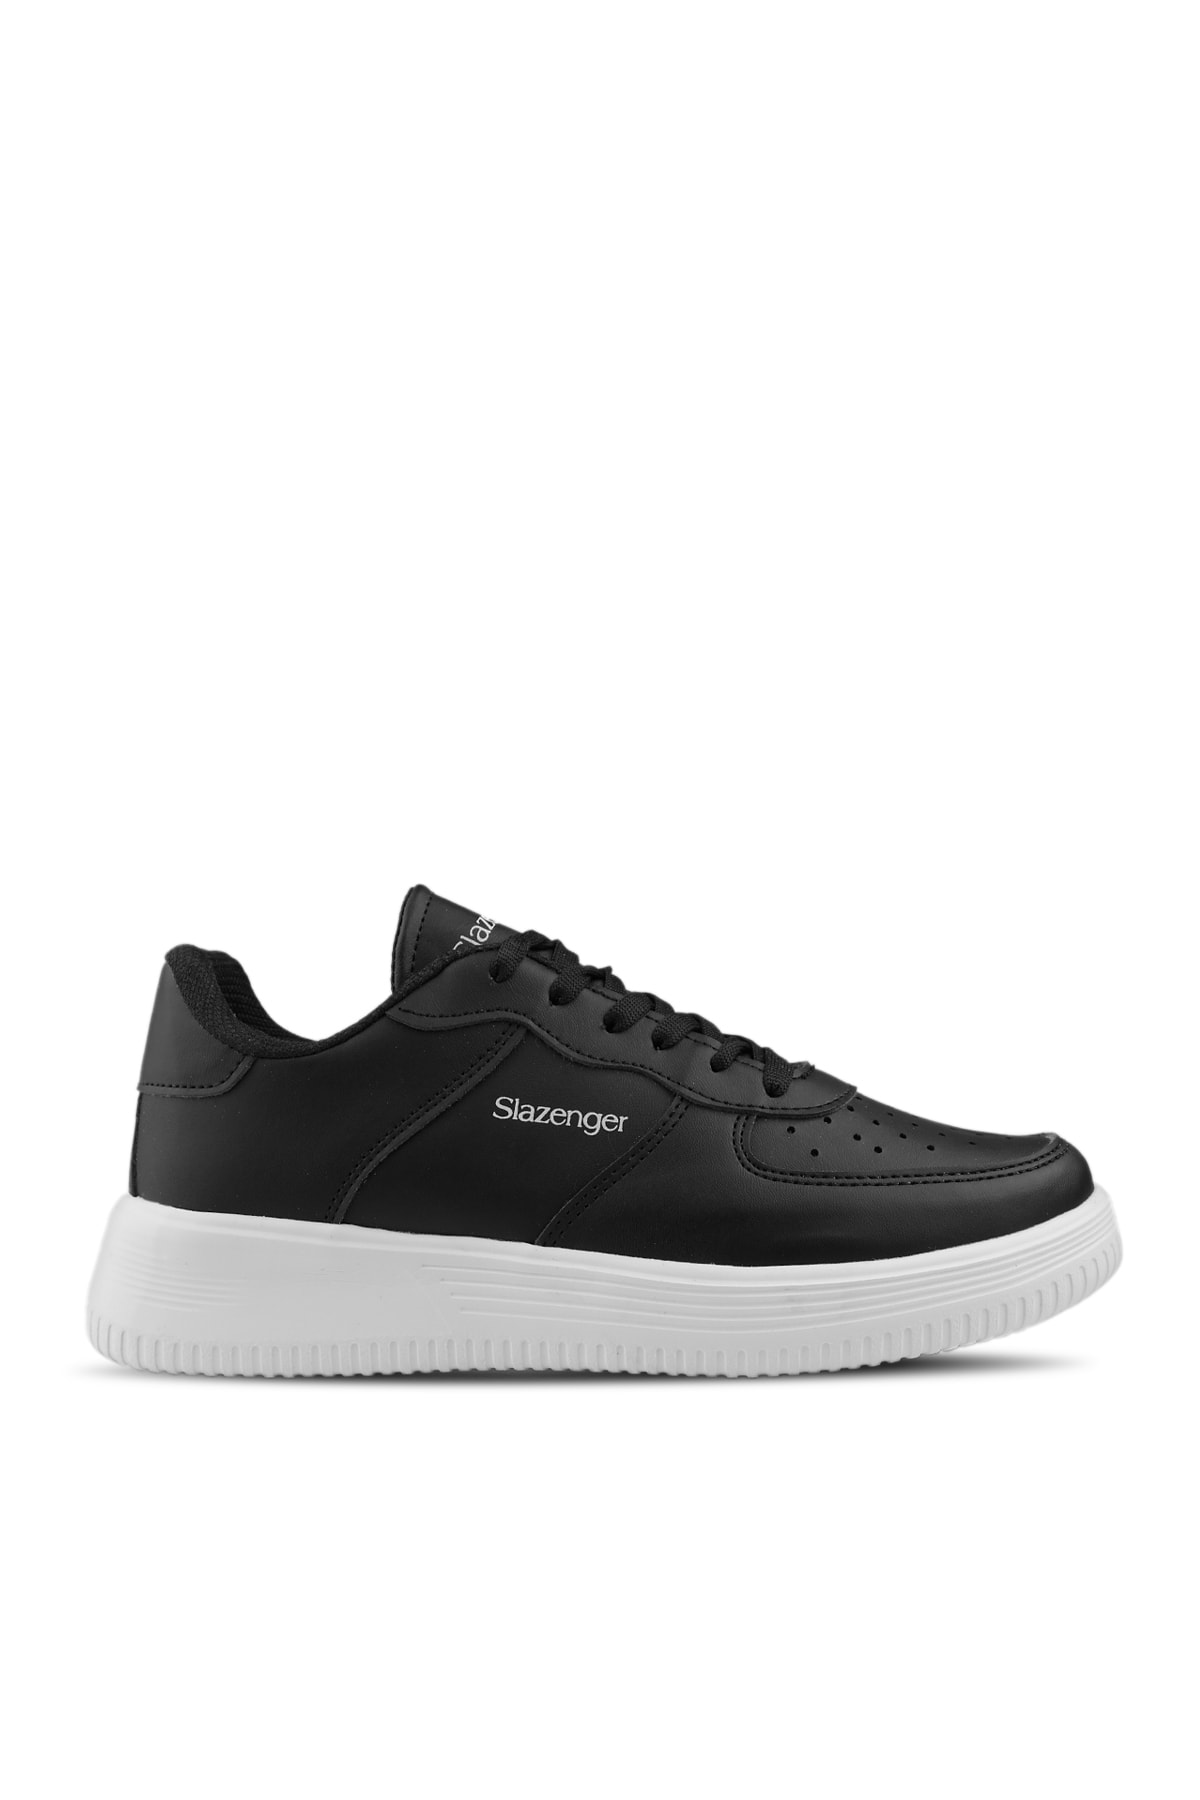 Levně Slazenger Ekua Sneaker Dámské boty černo/bílé